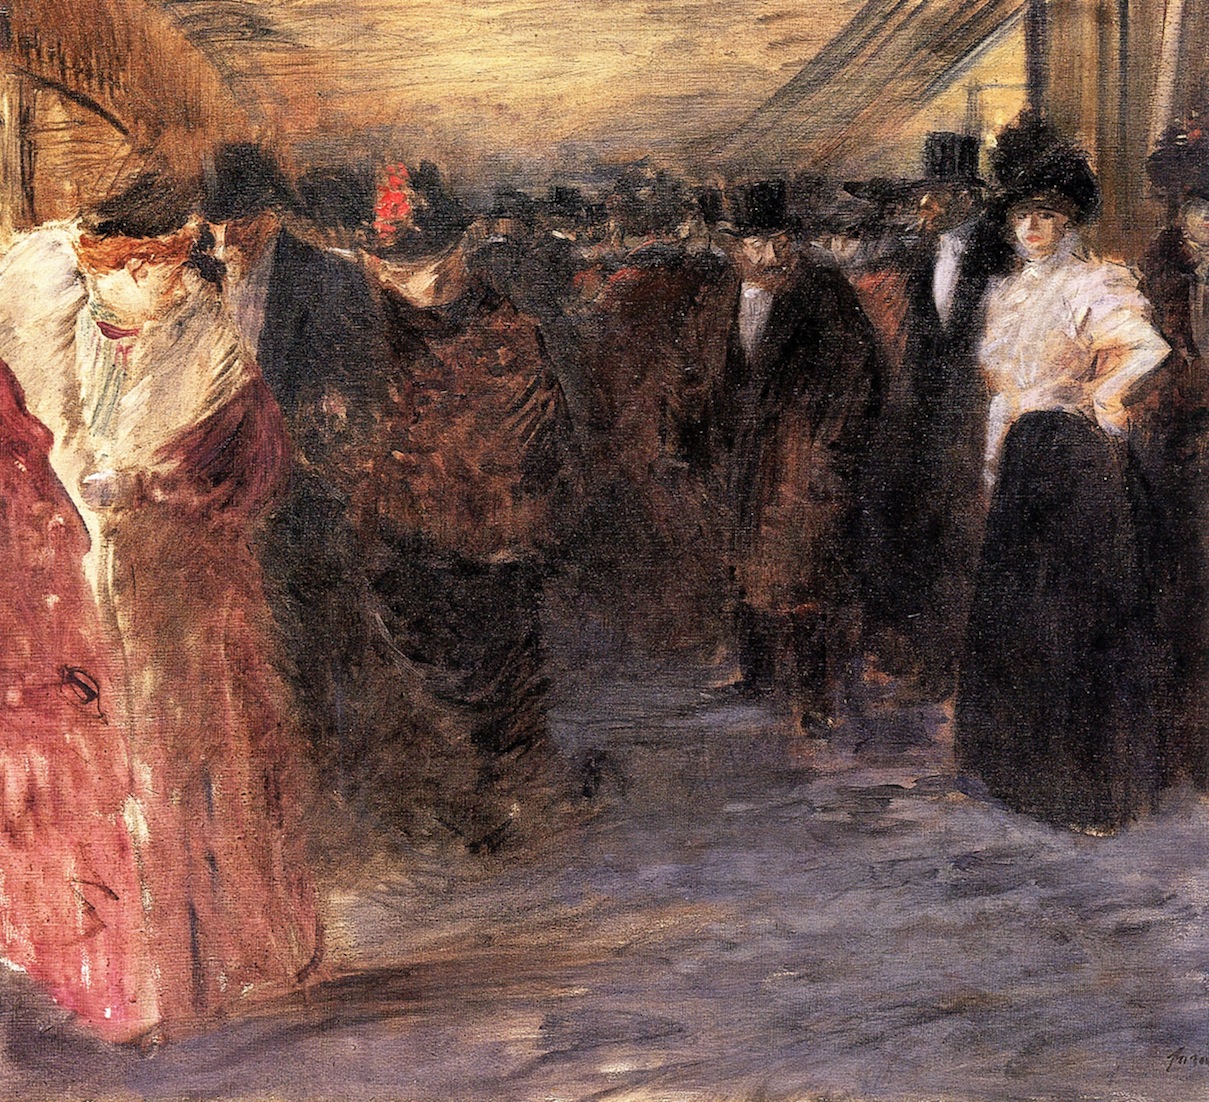 ÐšÐ°Ñ€Ñ‚Ð¸Ð½ÐºÐ¸ Ð¿Ð¾ Ð·Ð°Ð¿Ñ€Ð¾ÑÑƒ giclee painting: forain's the music hall, c.1890, 61x46cm.